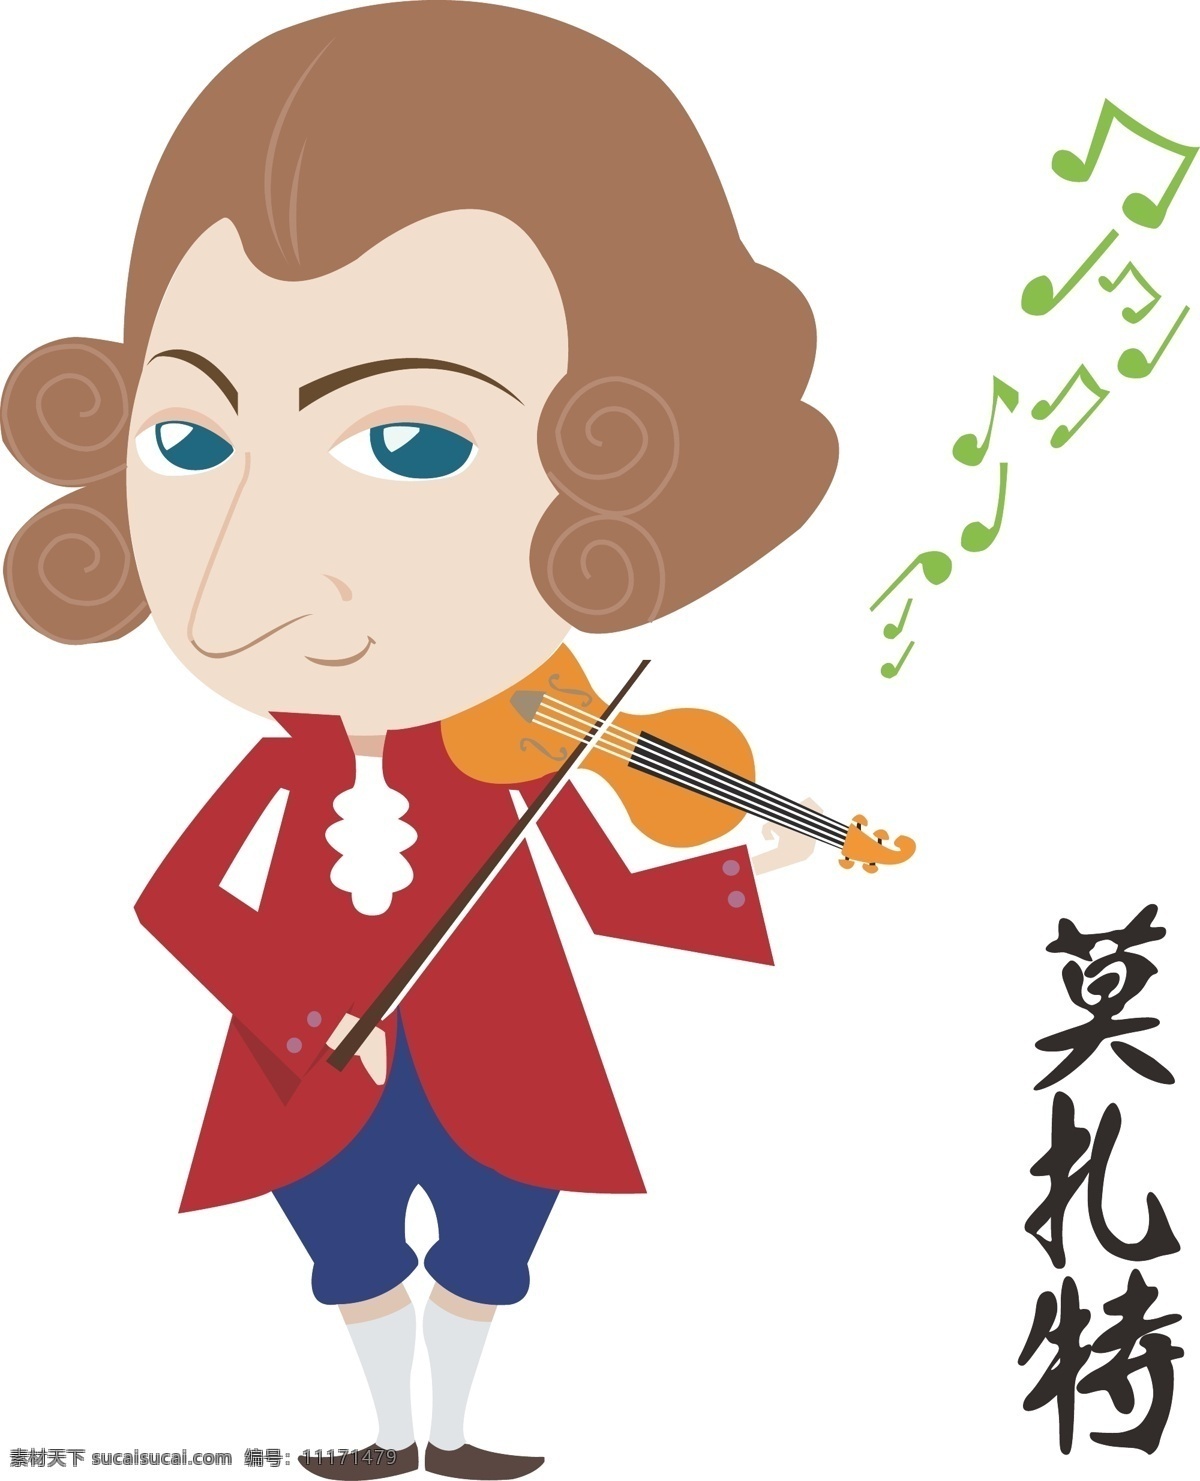 卡通 q 版 音乐家 莫扎特 小提琴 演奏 q版 矢量图 动漫动画 动漫人物